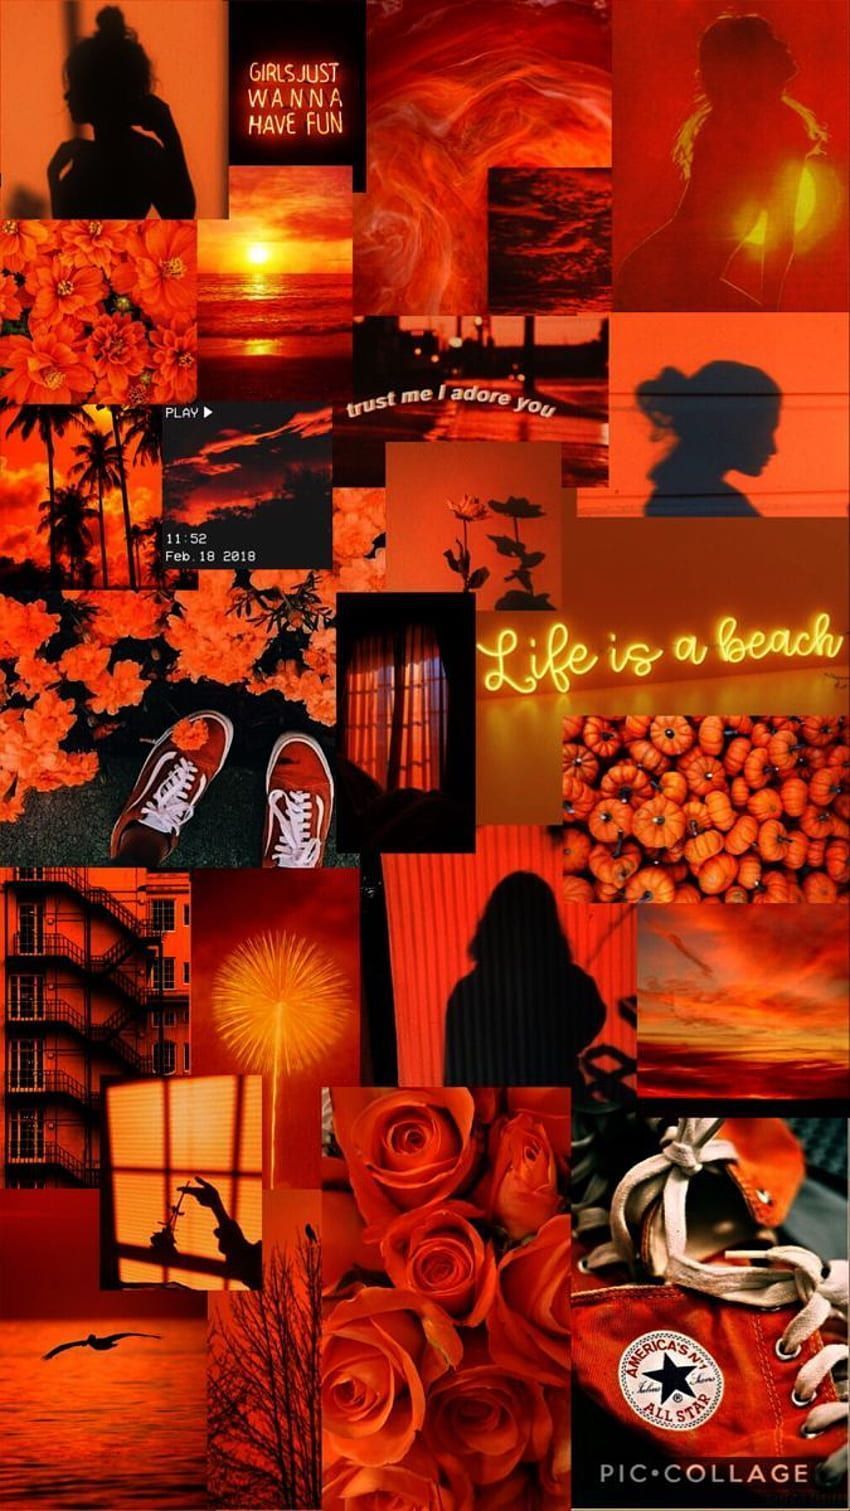 Life is a beach by person - Orange, neon orange, dark orange